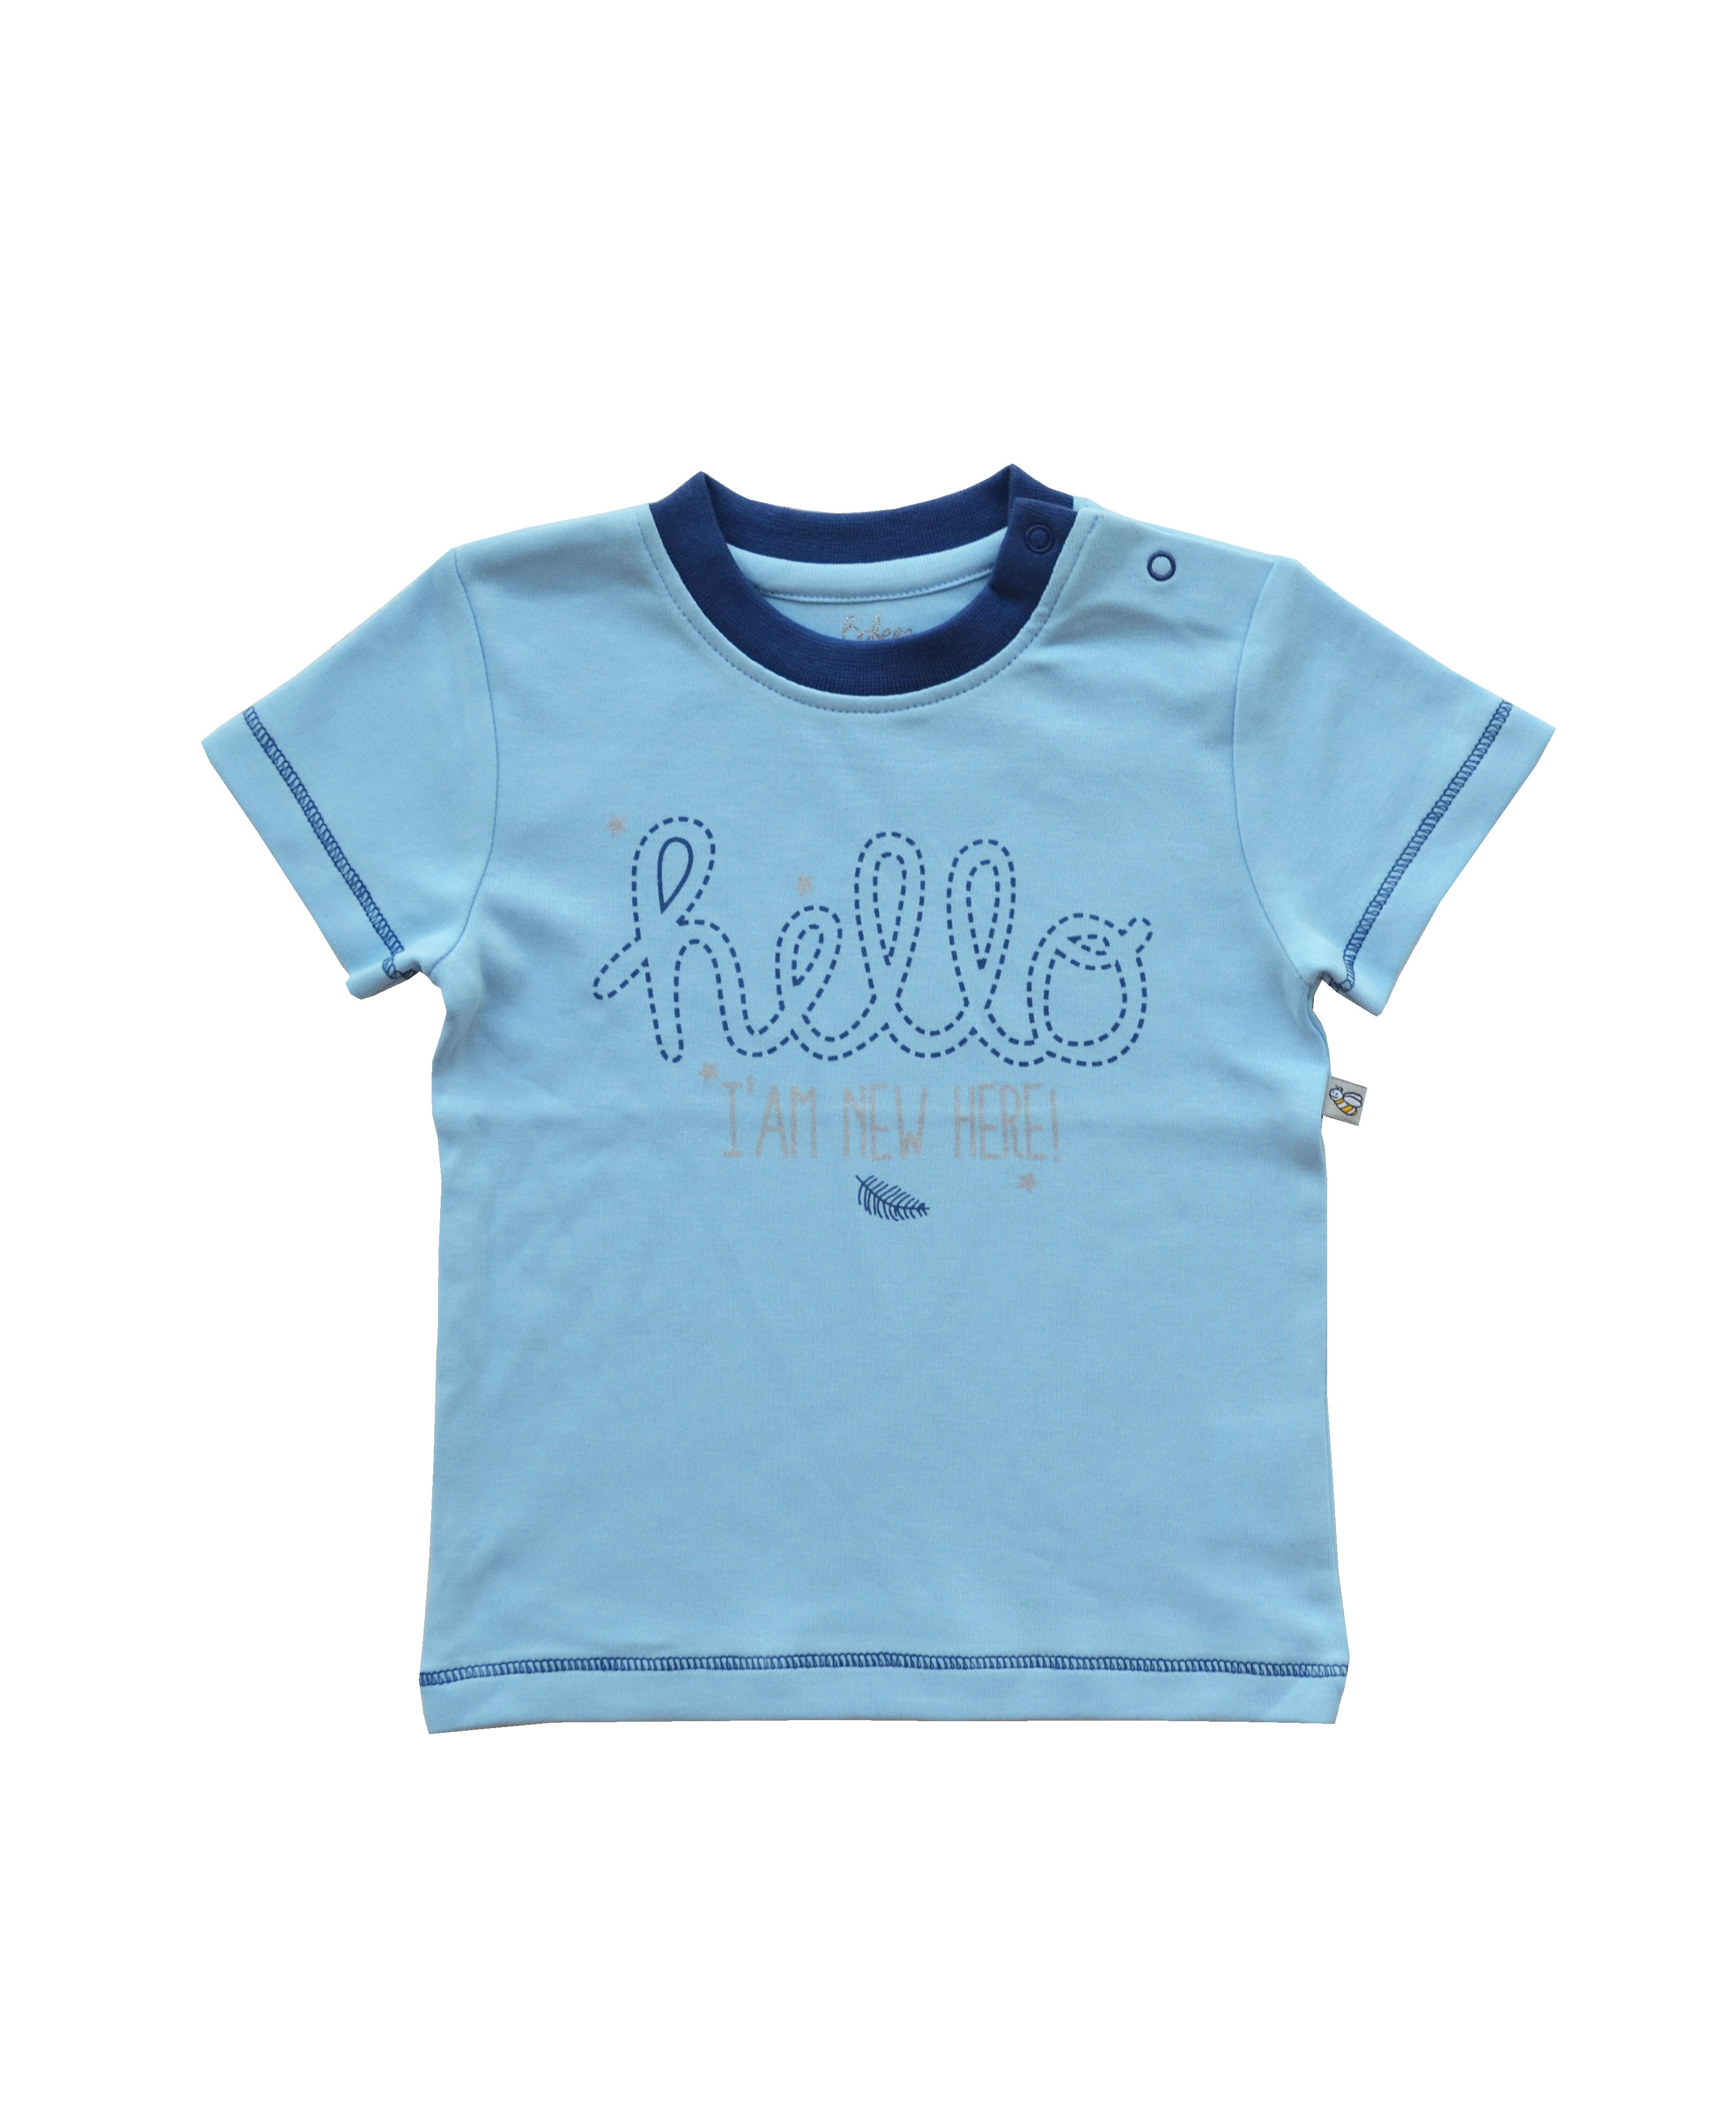 Babeez | Blue T-Shirt with Hello Print  (100% Cotton Interlock Biowash) undefined